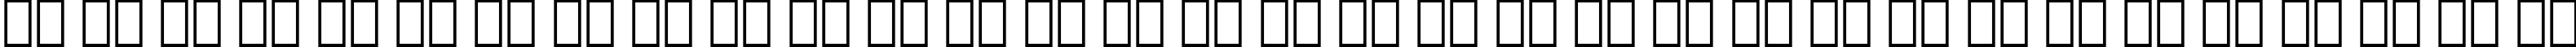 Пример написания русского алфавита шрифтом Zapf Chancery Medium BT